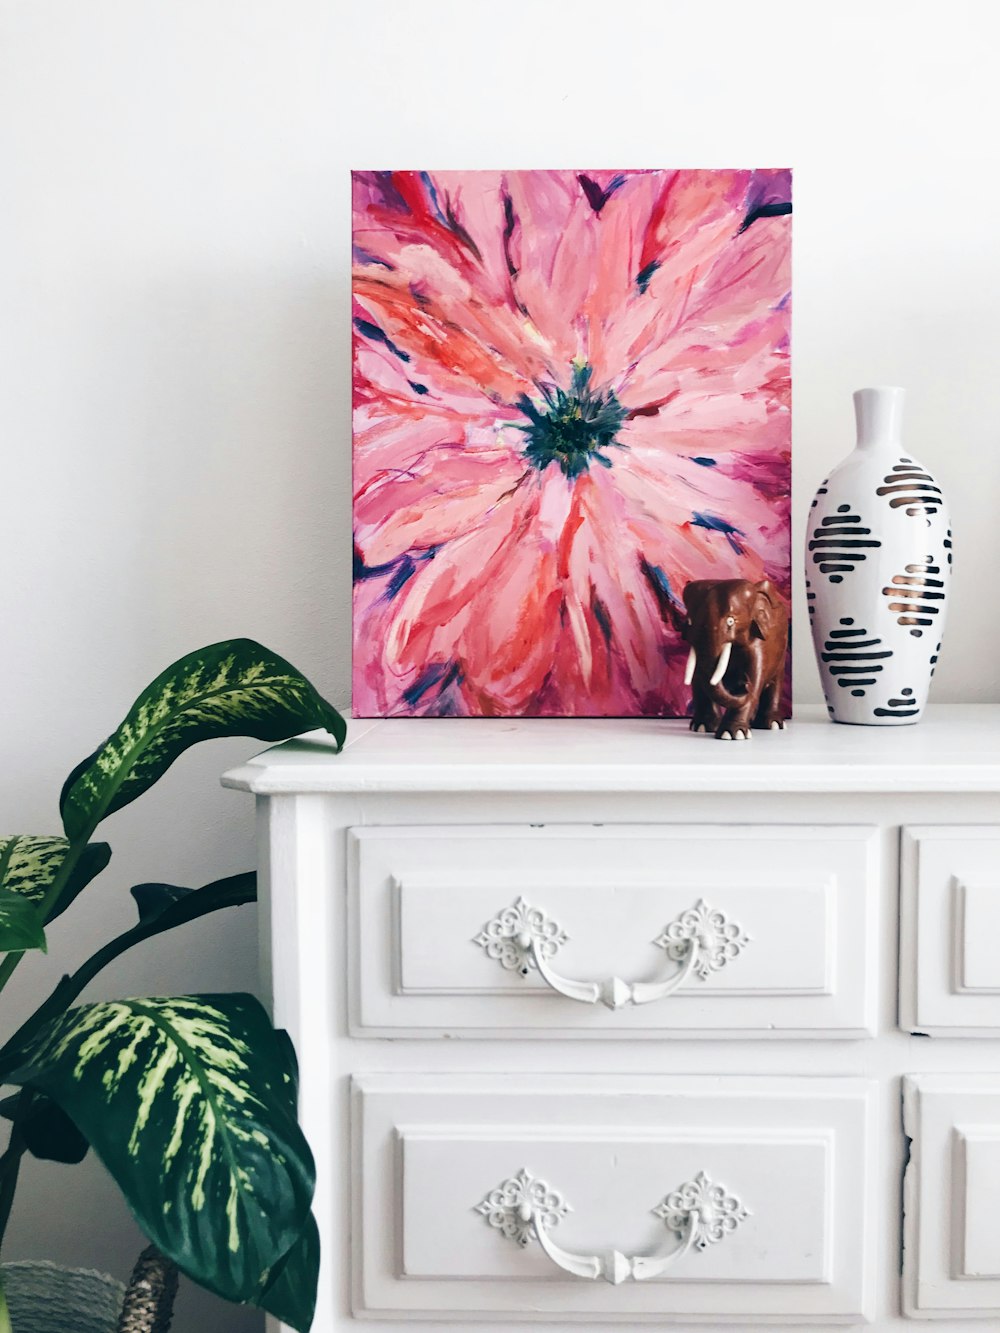 Gemälde einer rosa Blume auf einer Kommode in der Nähe einer weißen Vase